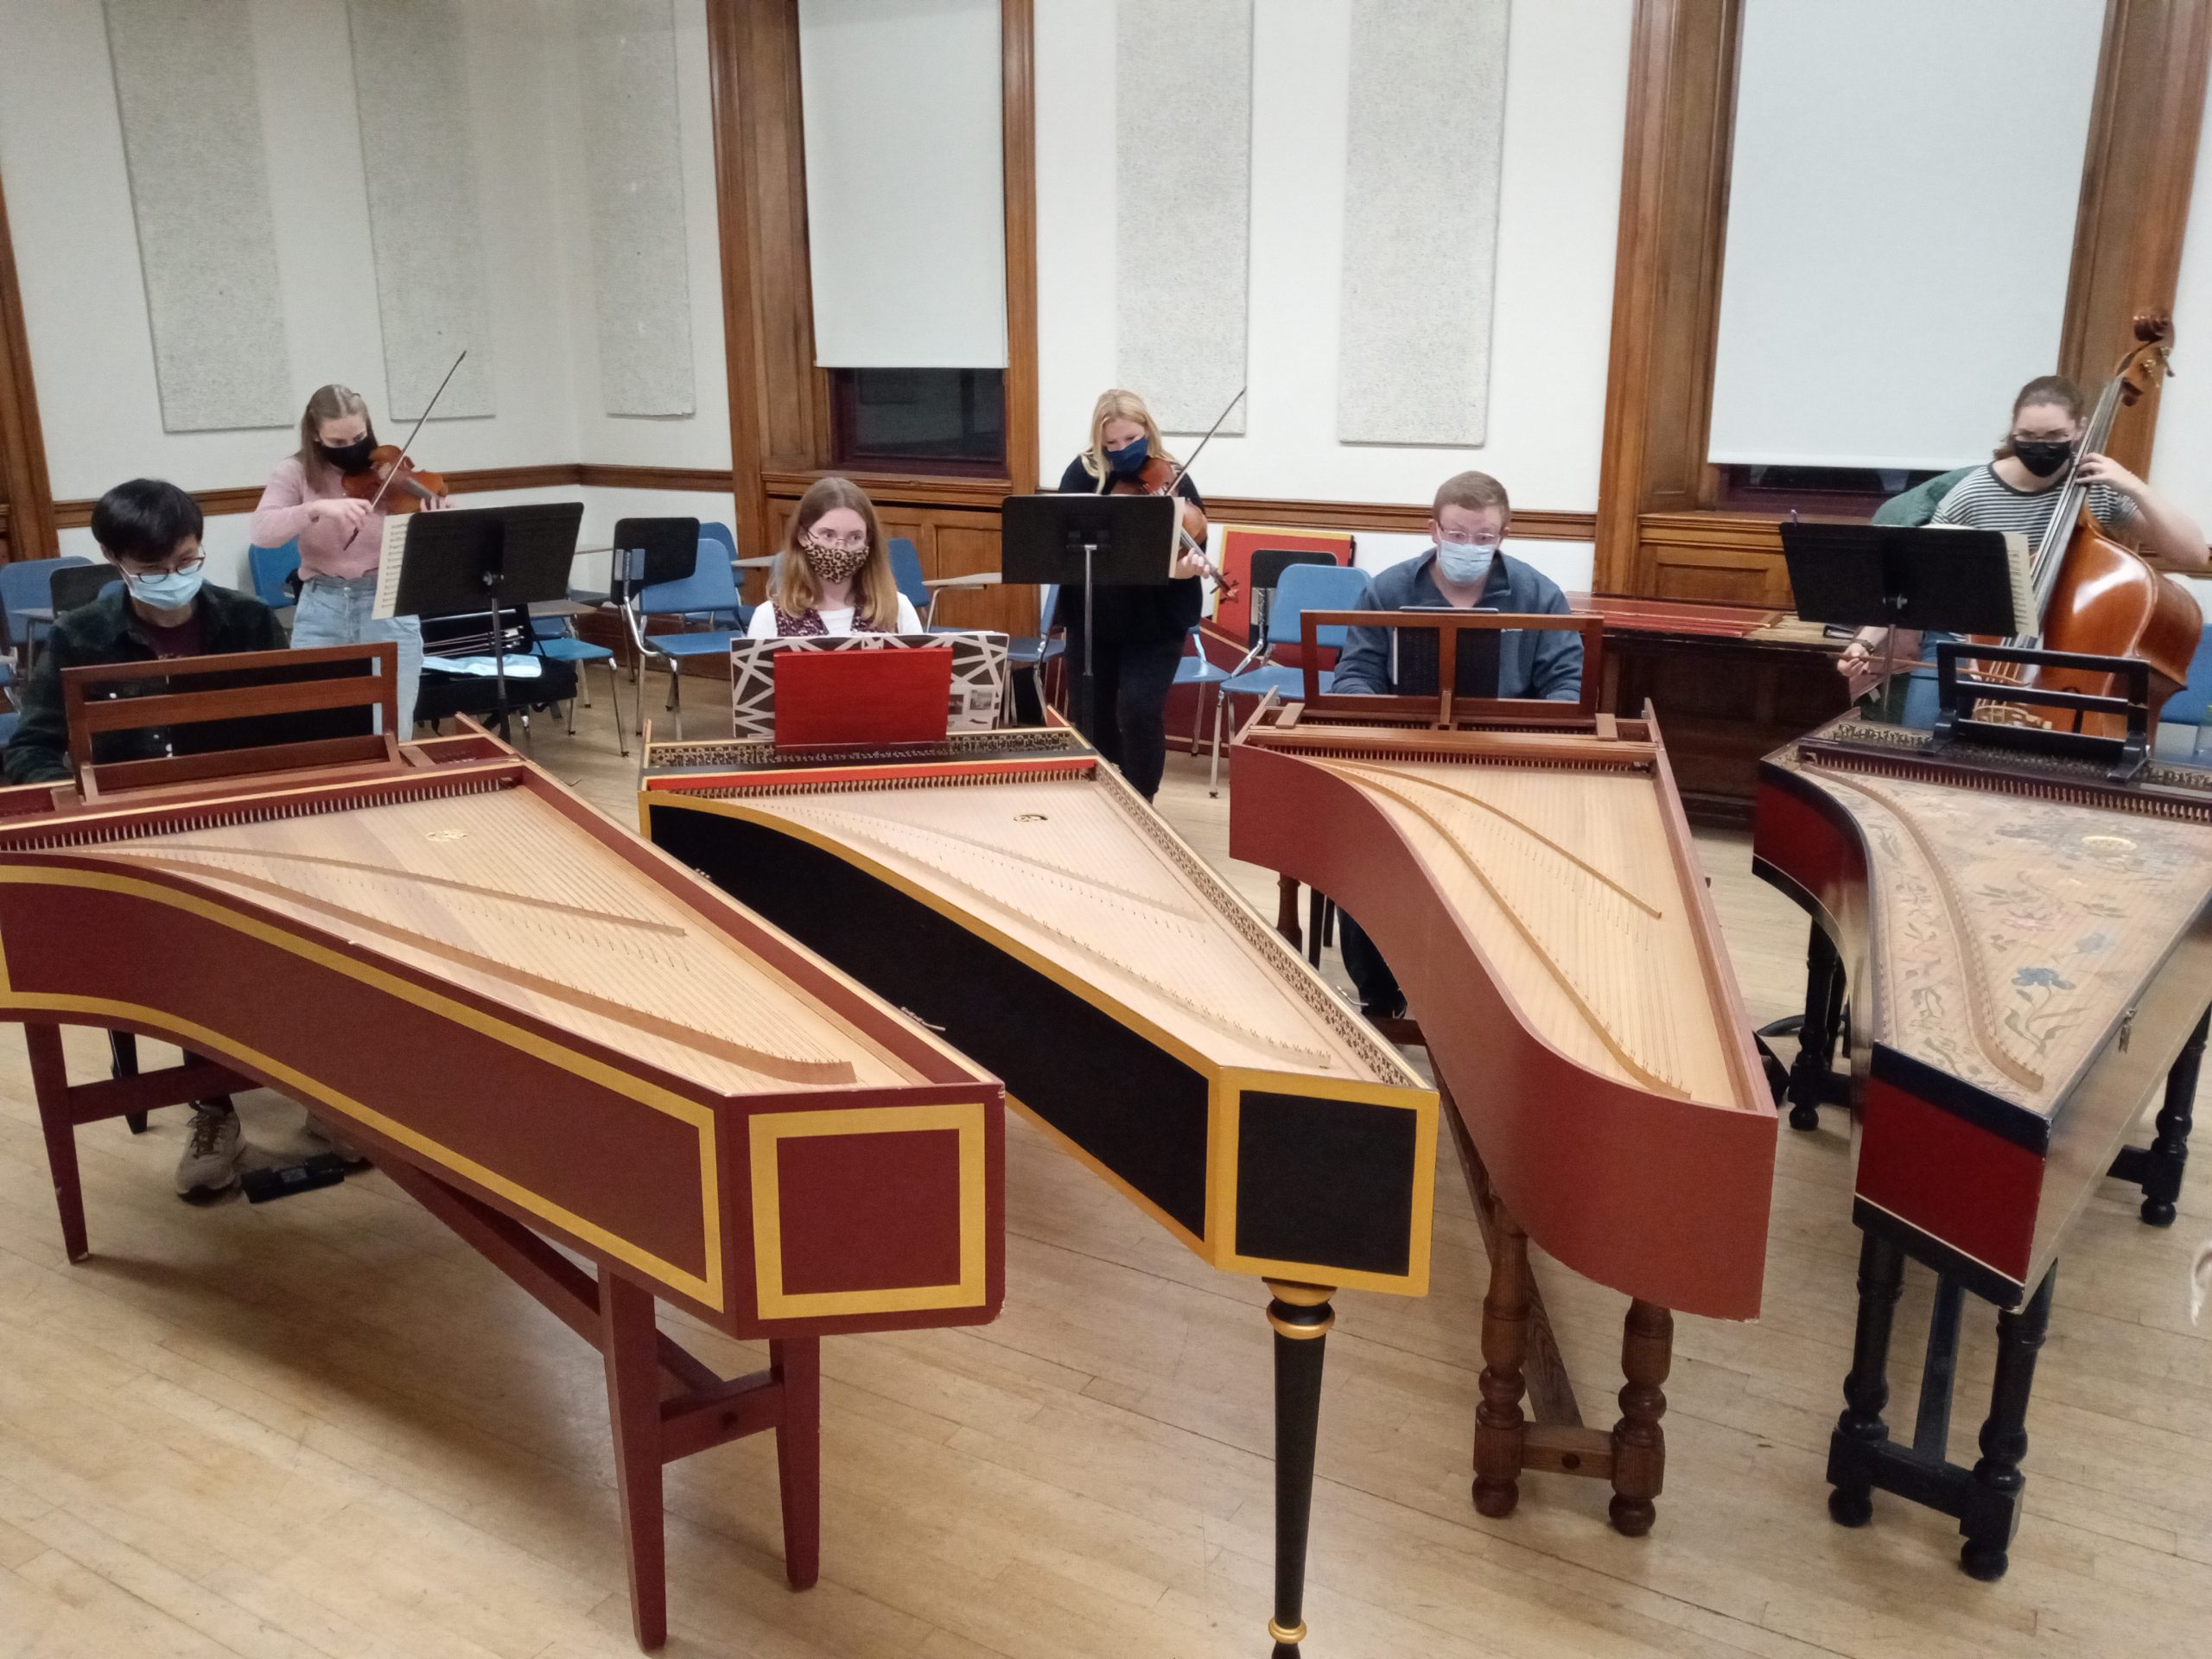 Harpsichord Rehersal